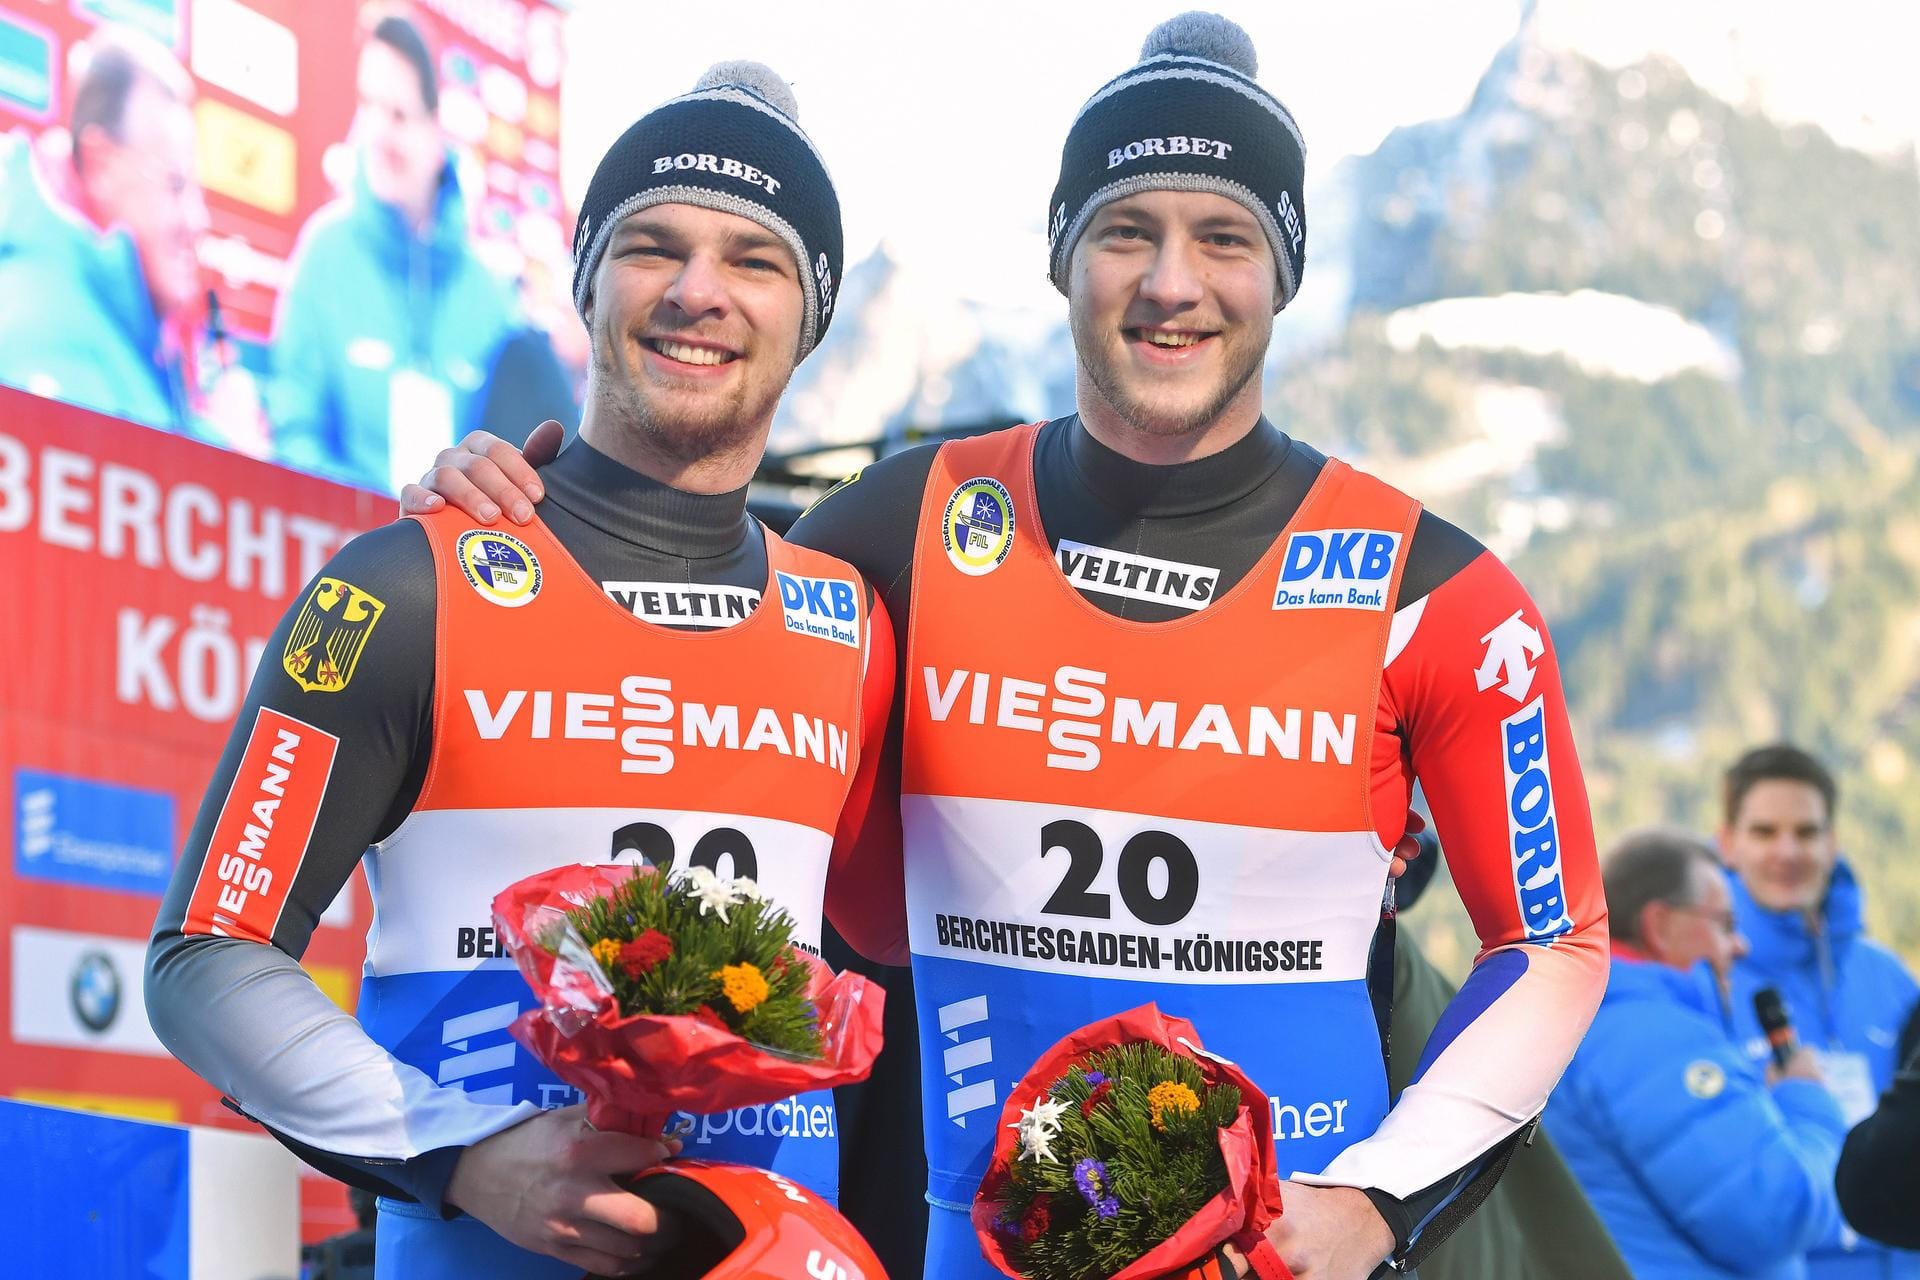 Robin Geuke und David Gamm starten als frischgebackene Deutsche Meister in die Weltcup-Saison. Können die Youngster die arrivierten deutschen Doppelsitzer schlagen?